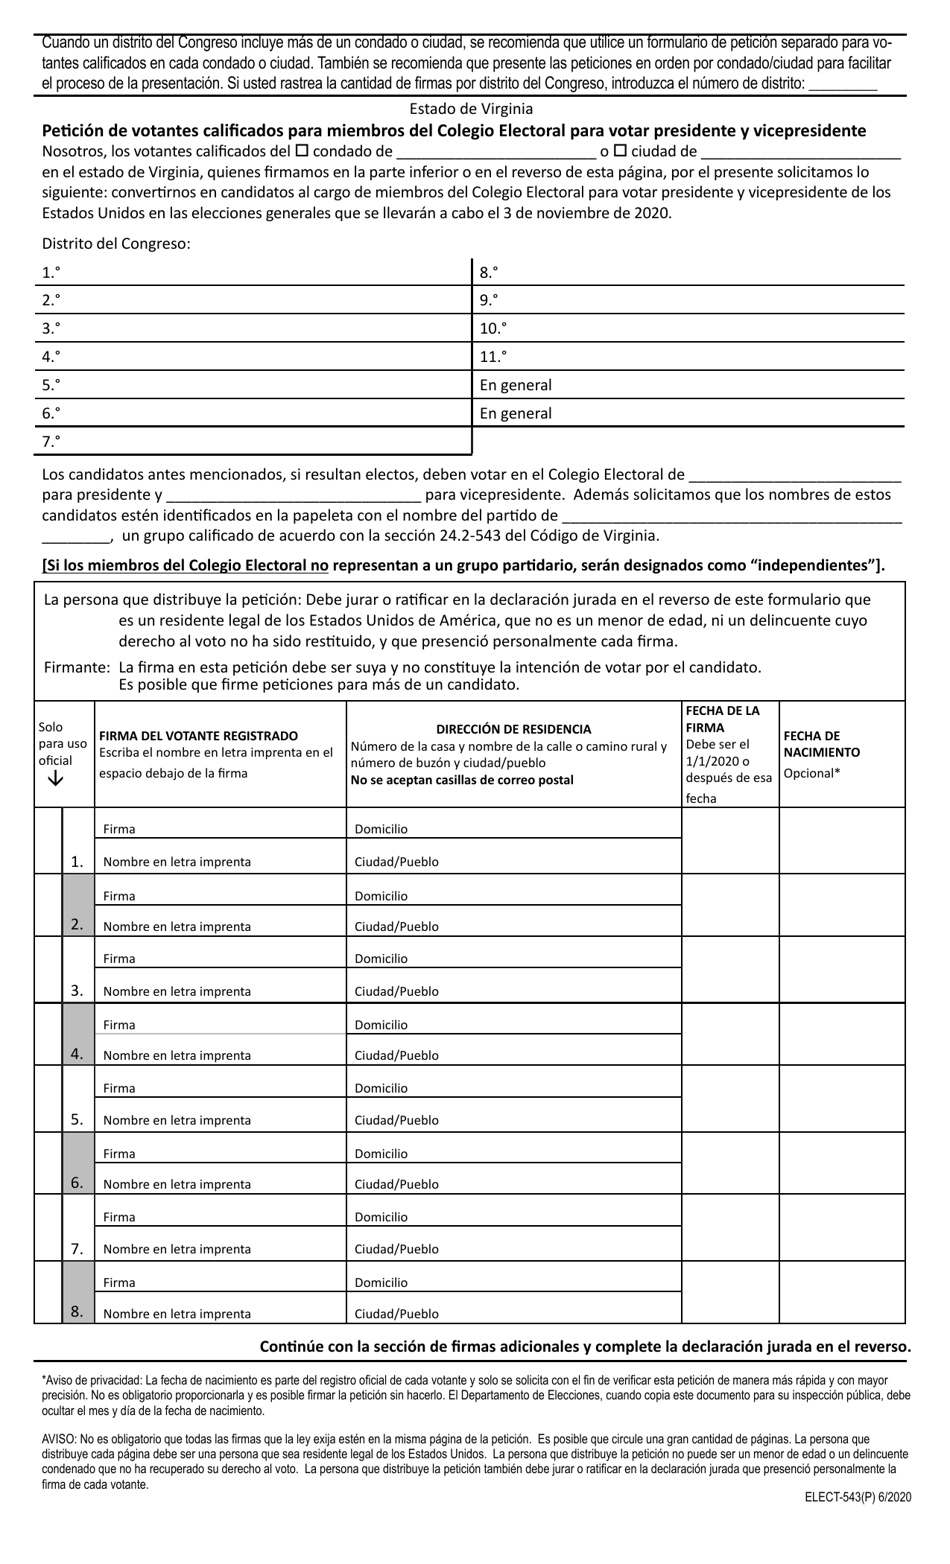 Formulario ELECT-543(P) Peticion De Votantes Calificados Para Miembros Del Colegio Electoral Para Votar Presidente Y Vicepresidente - Legal Size - Virginia (Spanish), Page 1